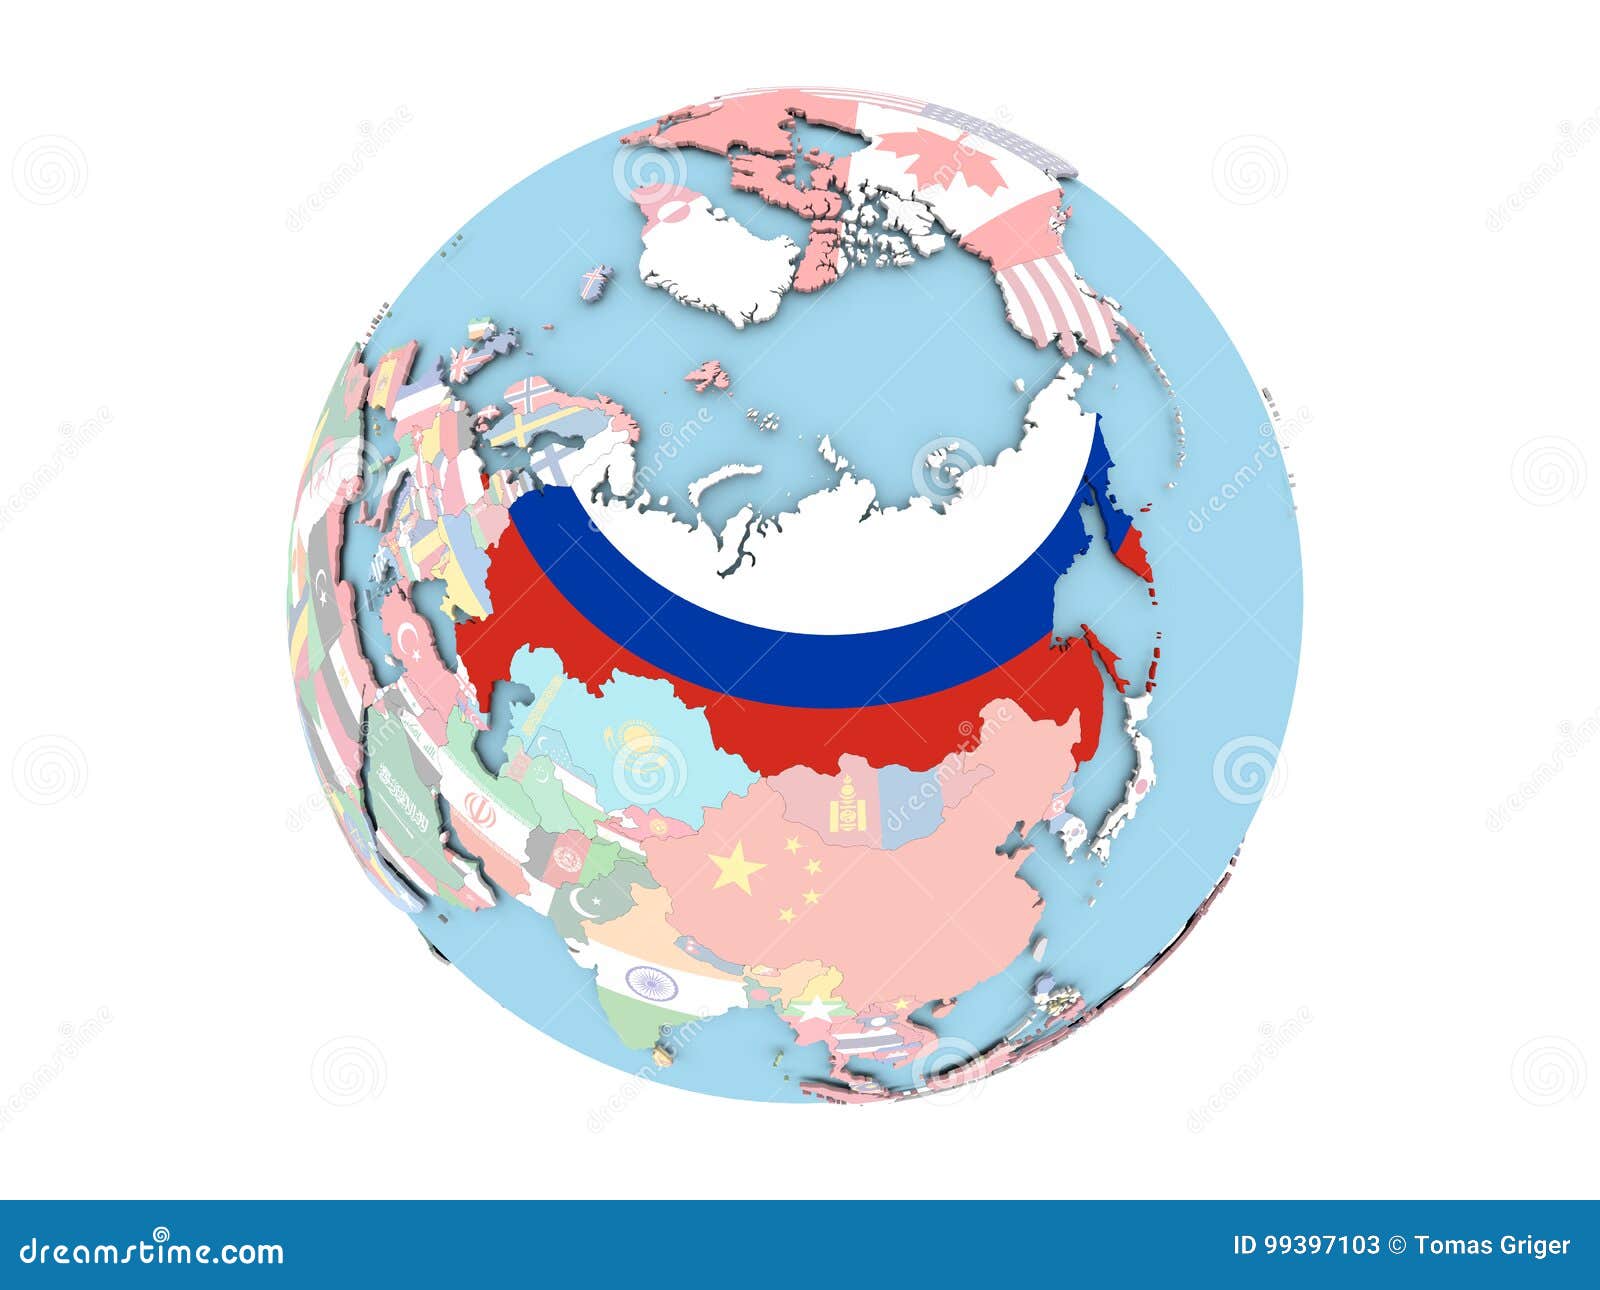 Карта россии на шаре. Карта советского Союза на глобусе.